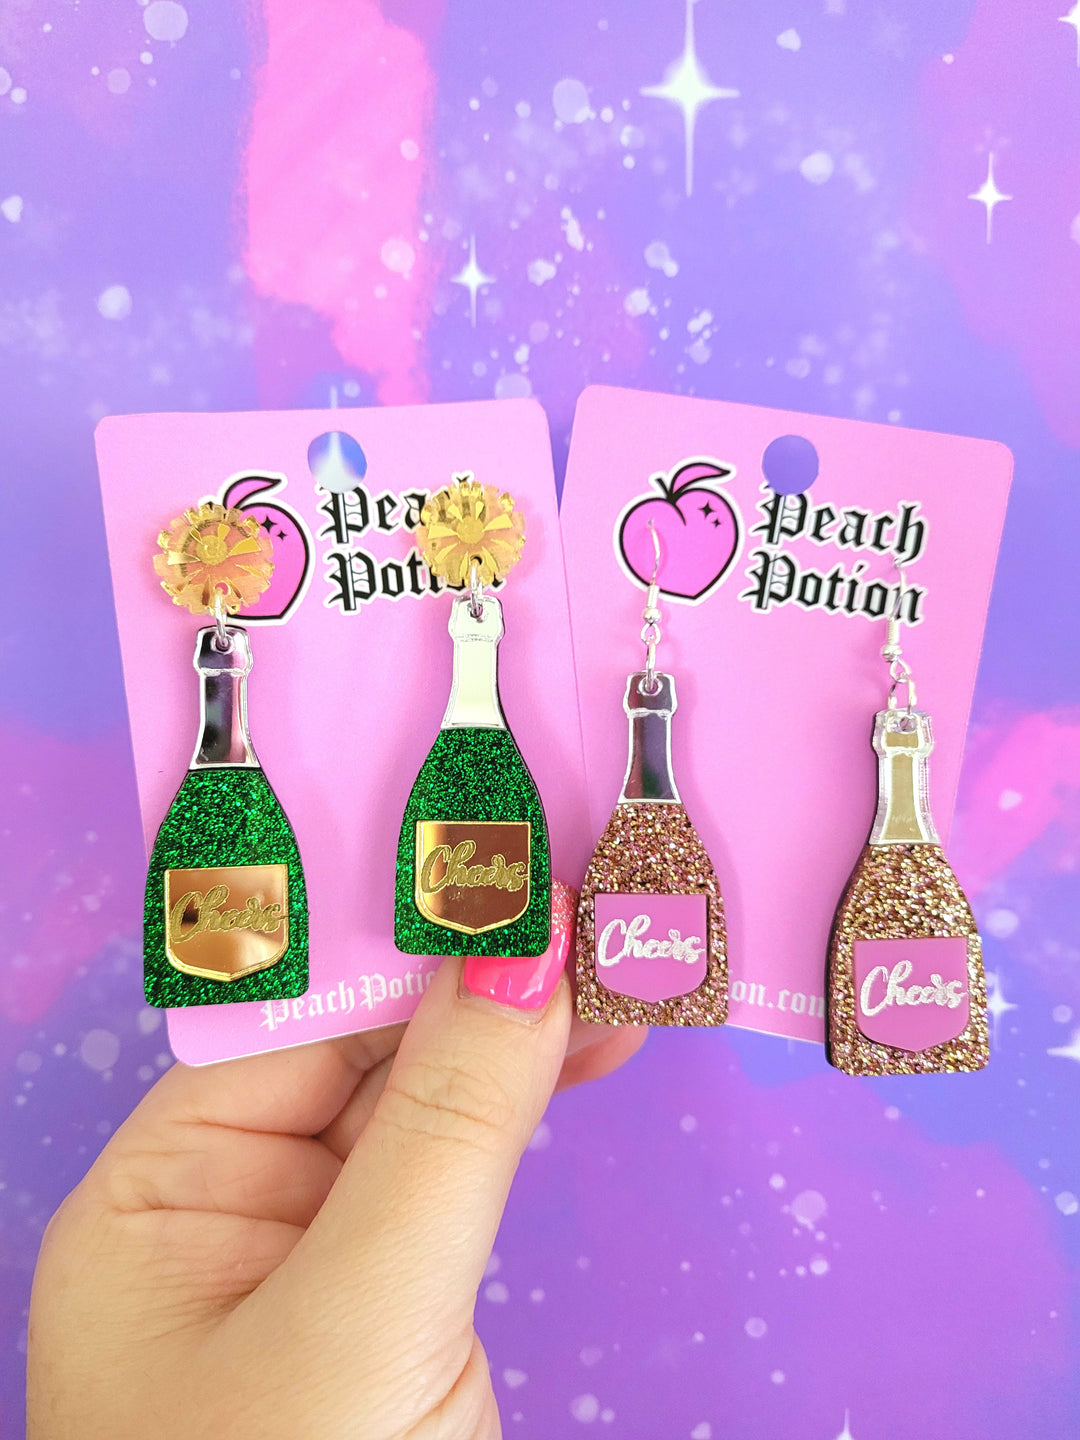 Champagne Bottle Earrings